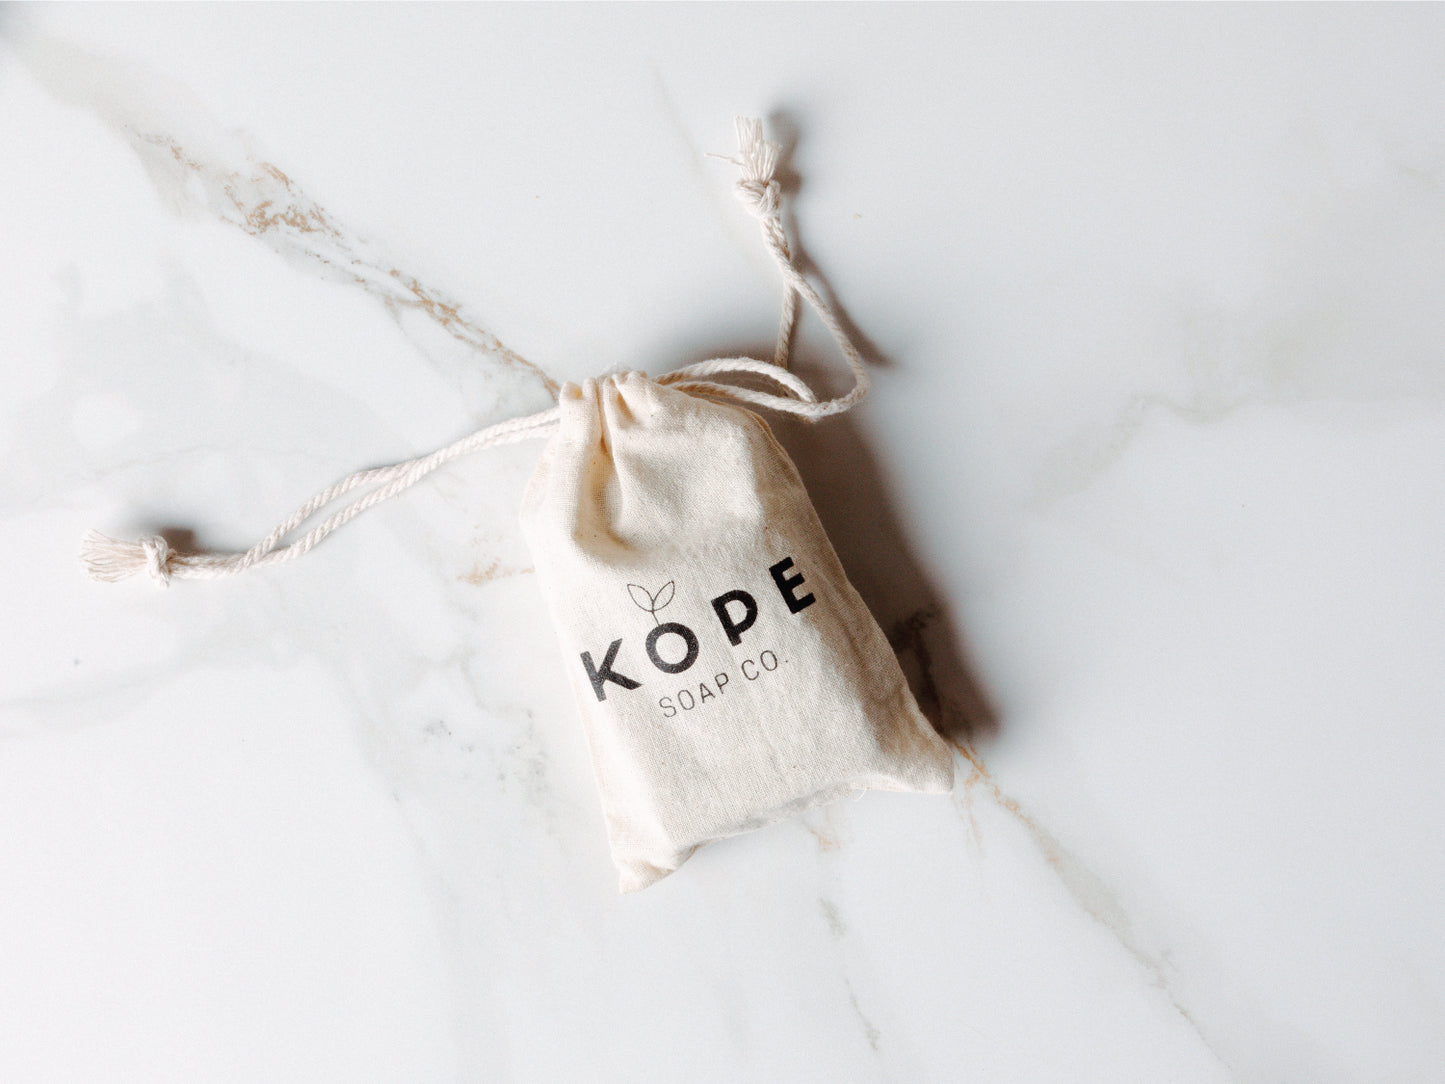 
                  
                    Kope soap in a branded bag on granite
                  
                